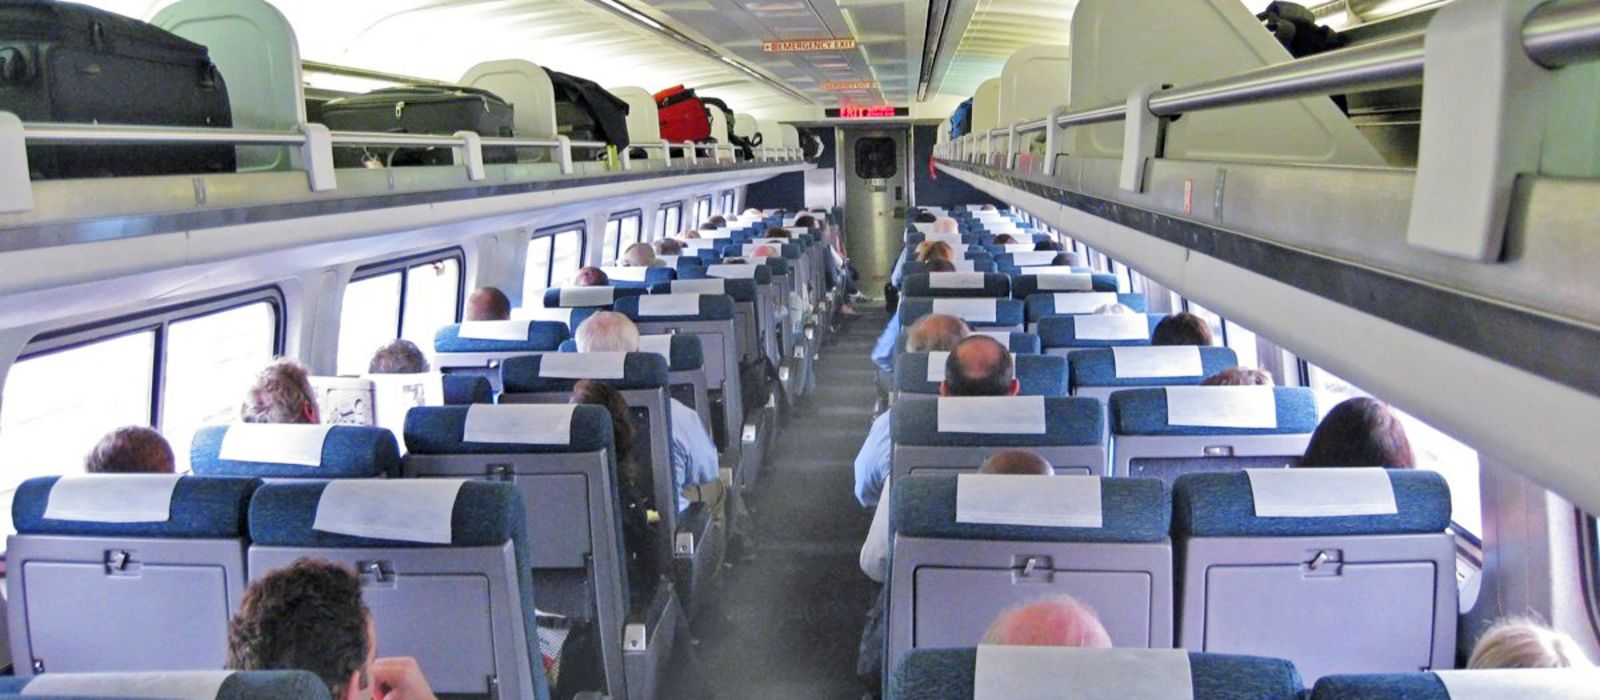 Amtrak Coach Class